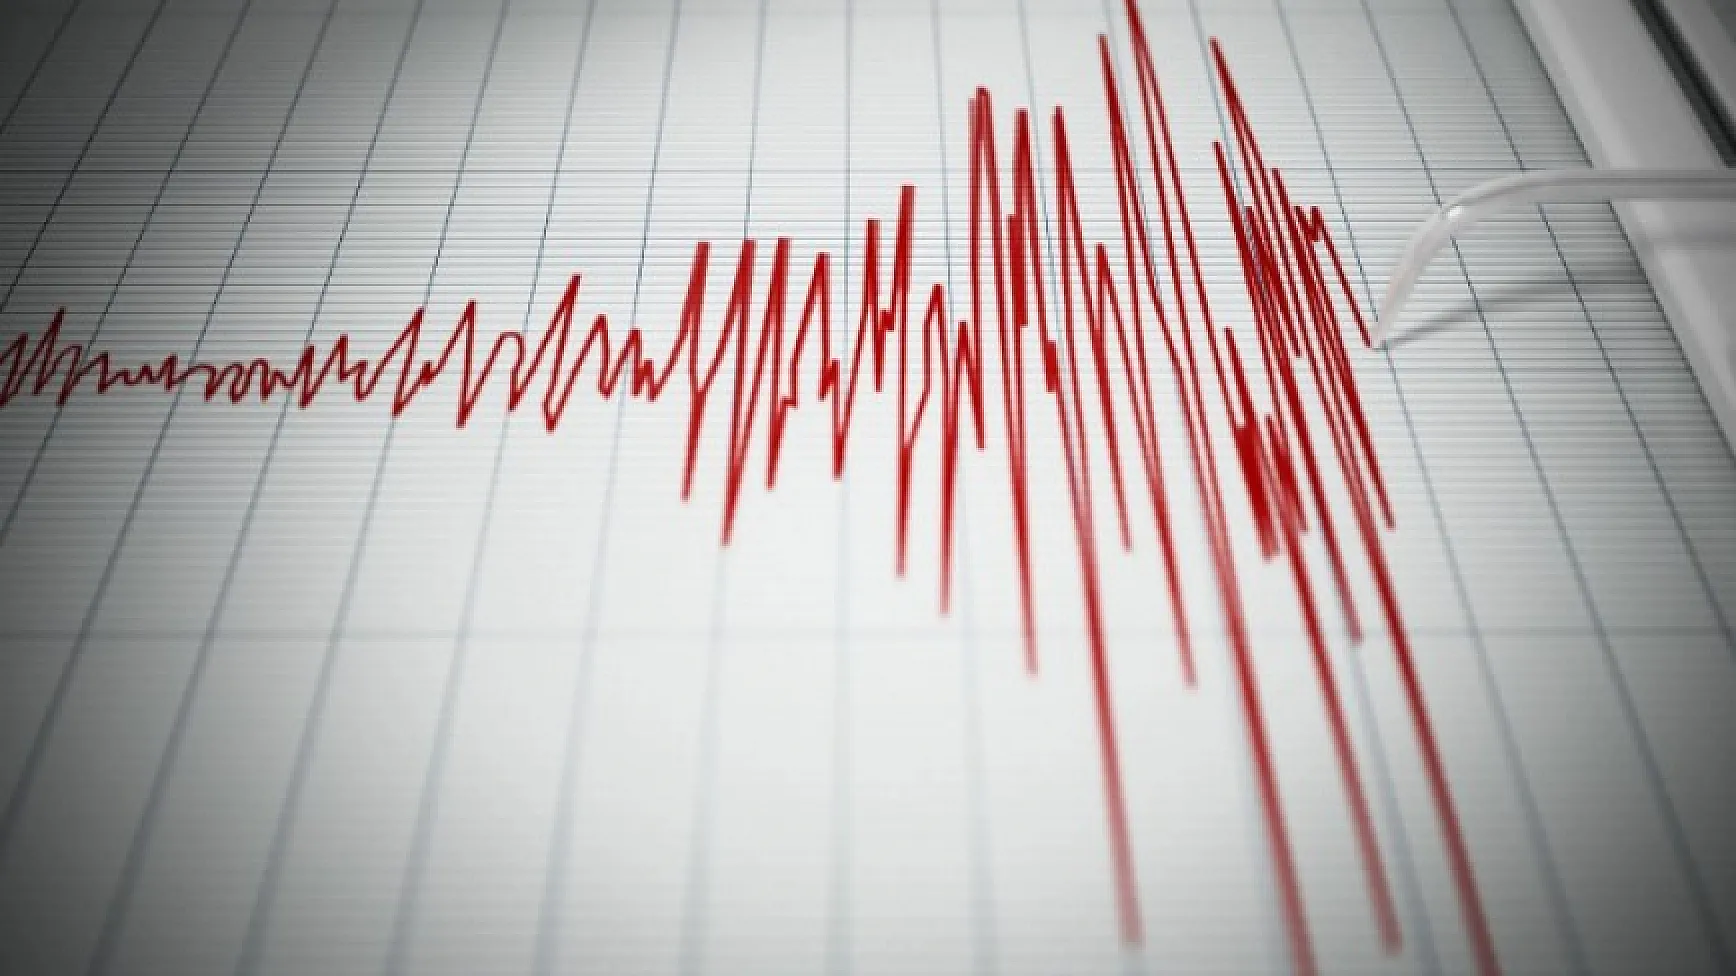 Ege’de 5.8 büyüklüğünde korkutan deprem oldu